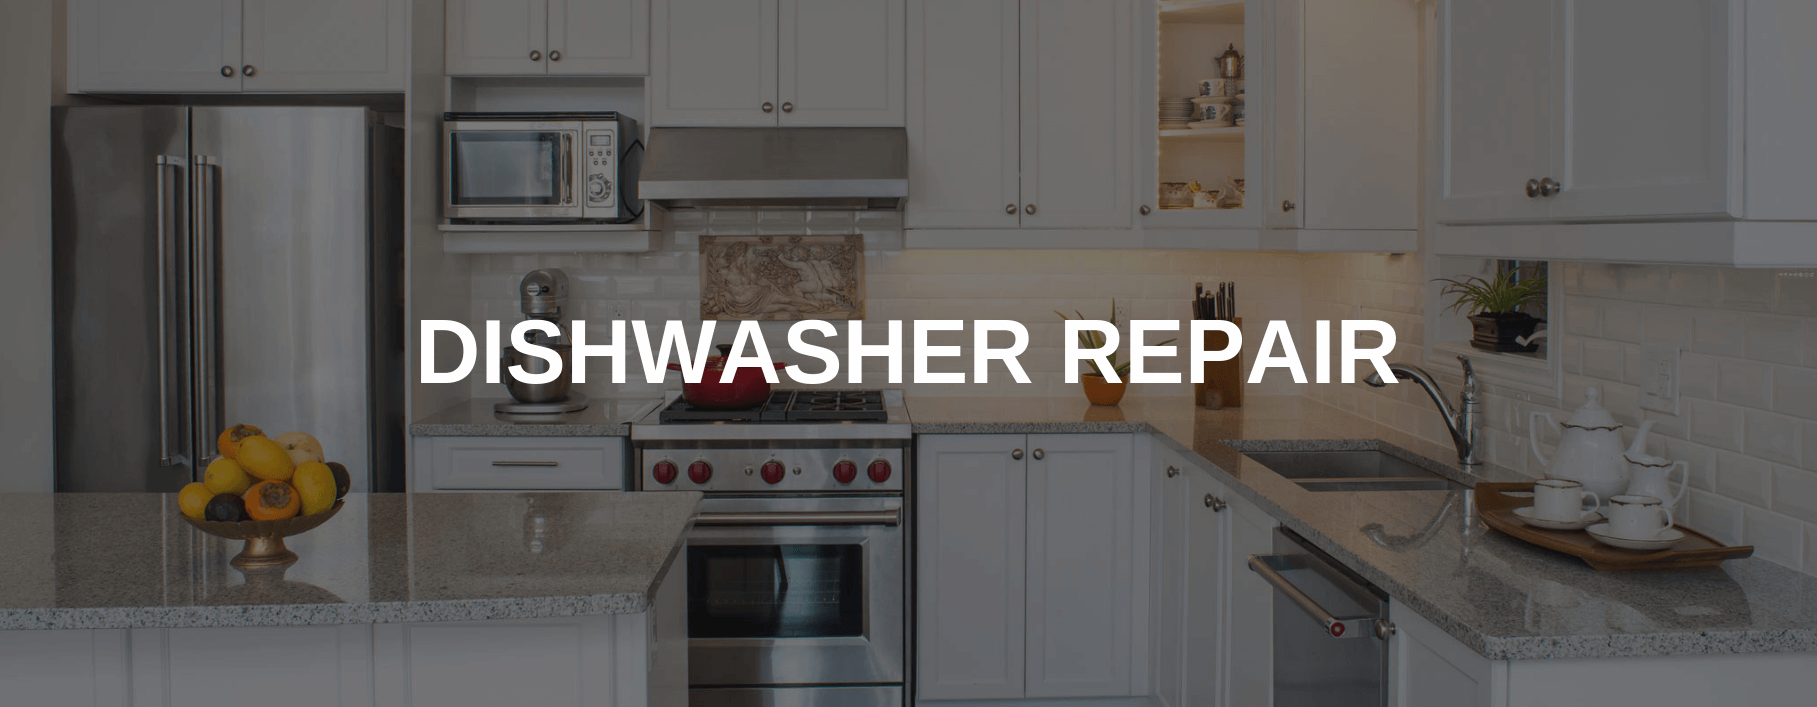 dishwasher repair moore